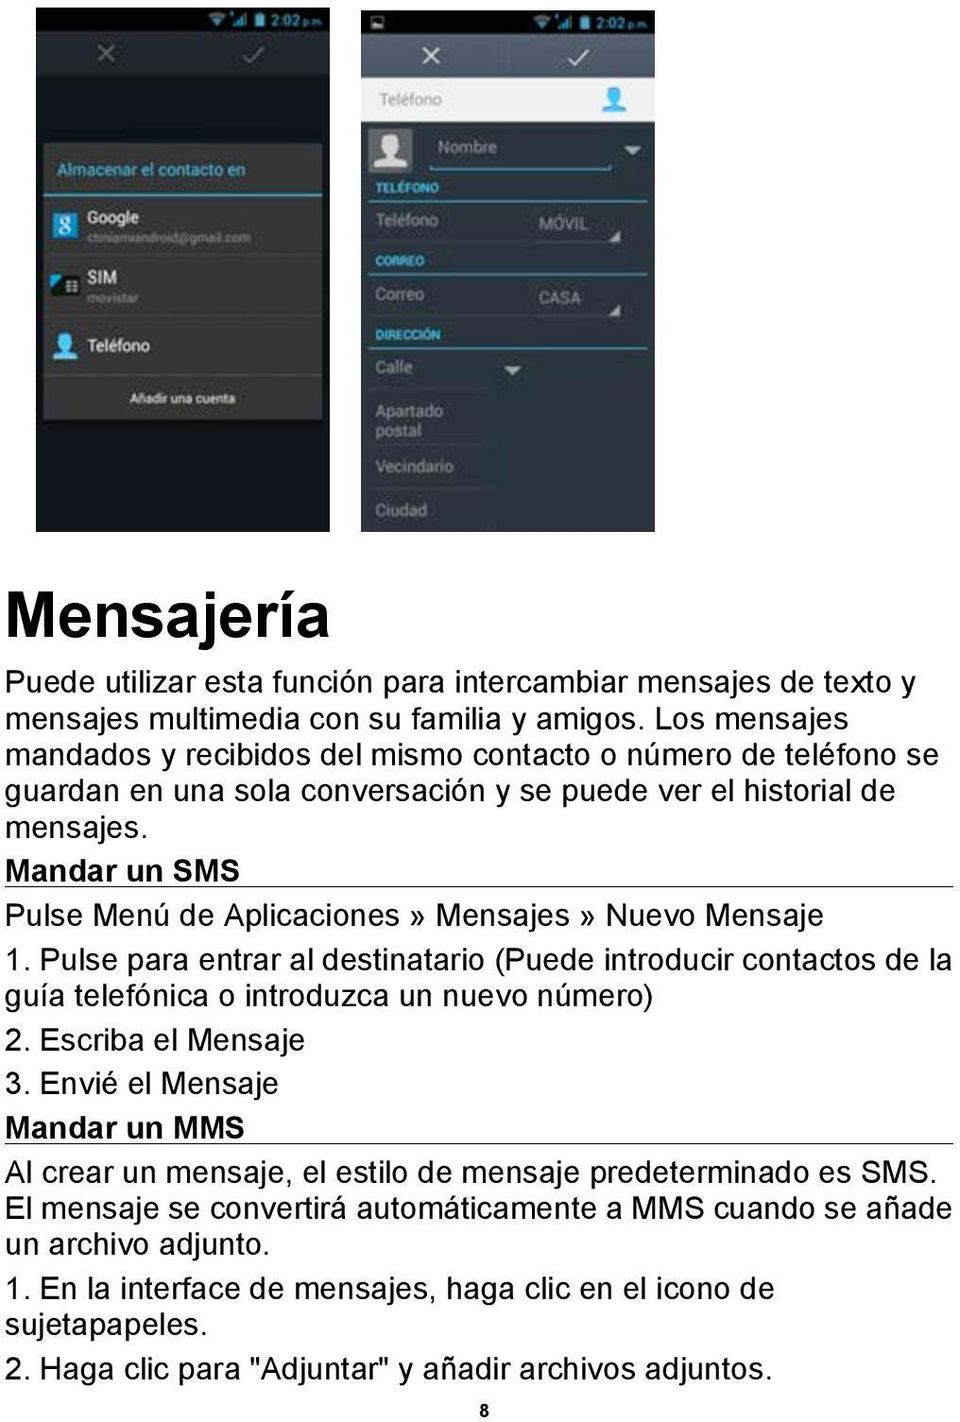 Mandar un SMS Pulse Menú de Aplicaciones» Mensajes» Nuevo Mensaje 1. Pulse para entrar al destinatario (Puede introducir contactos de la guía telefónica o introduzca un nuevo número) 2.